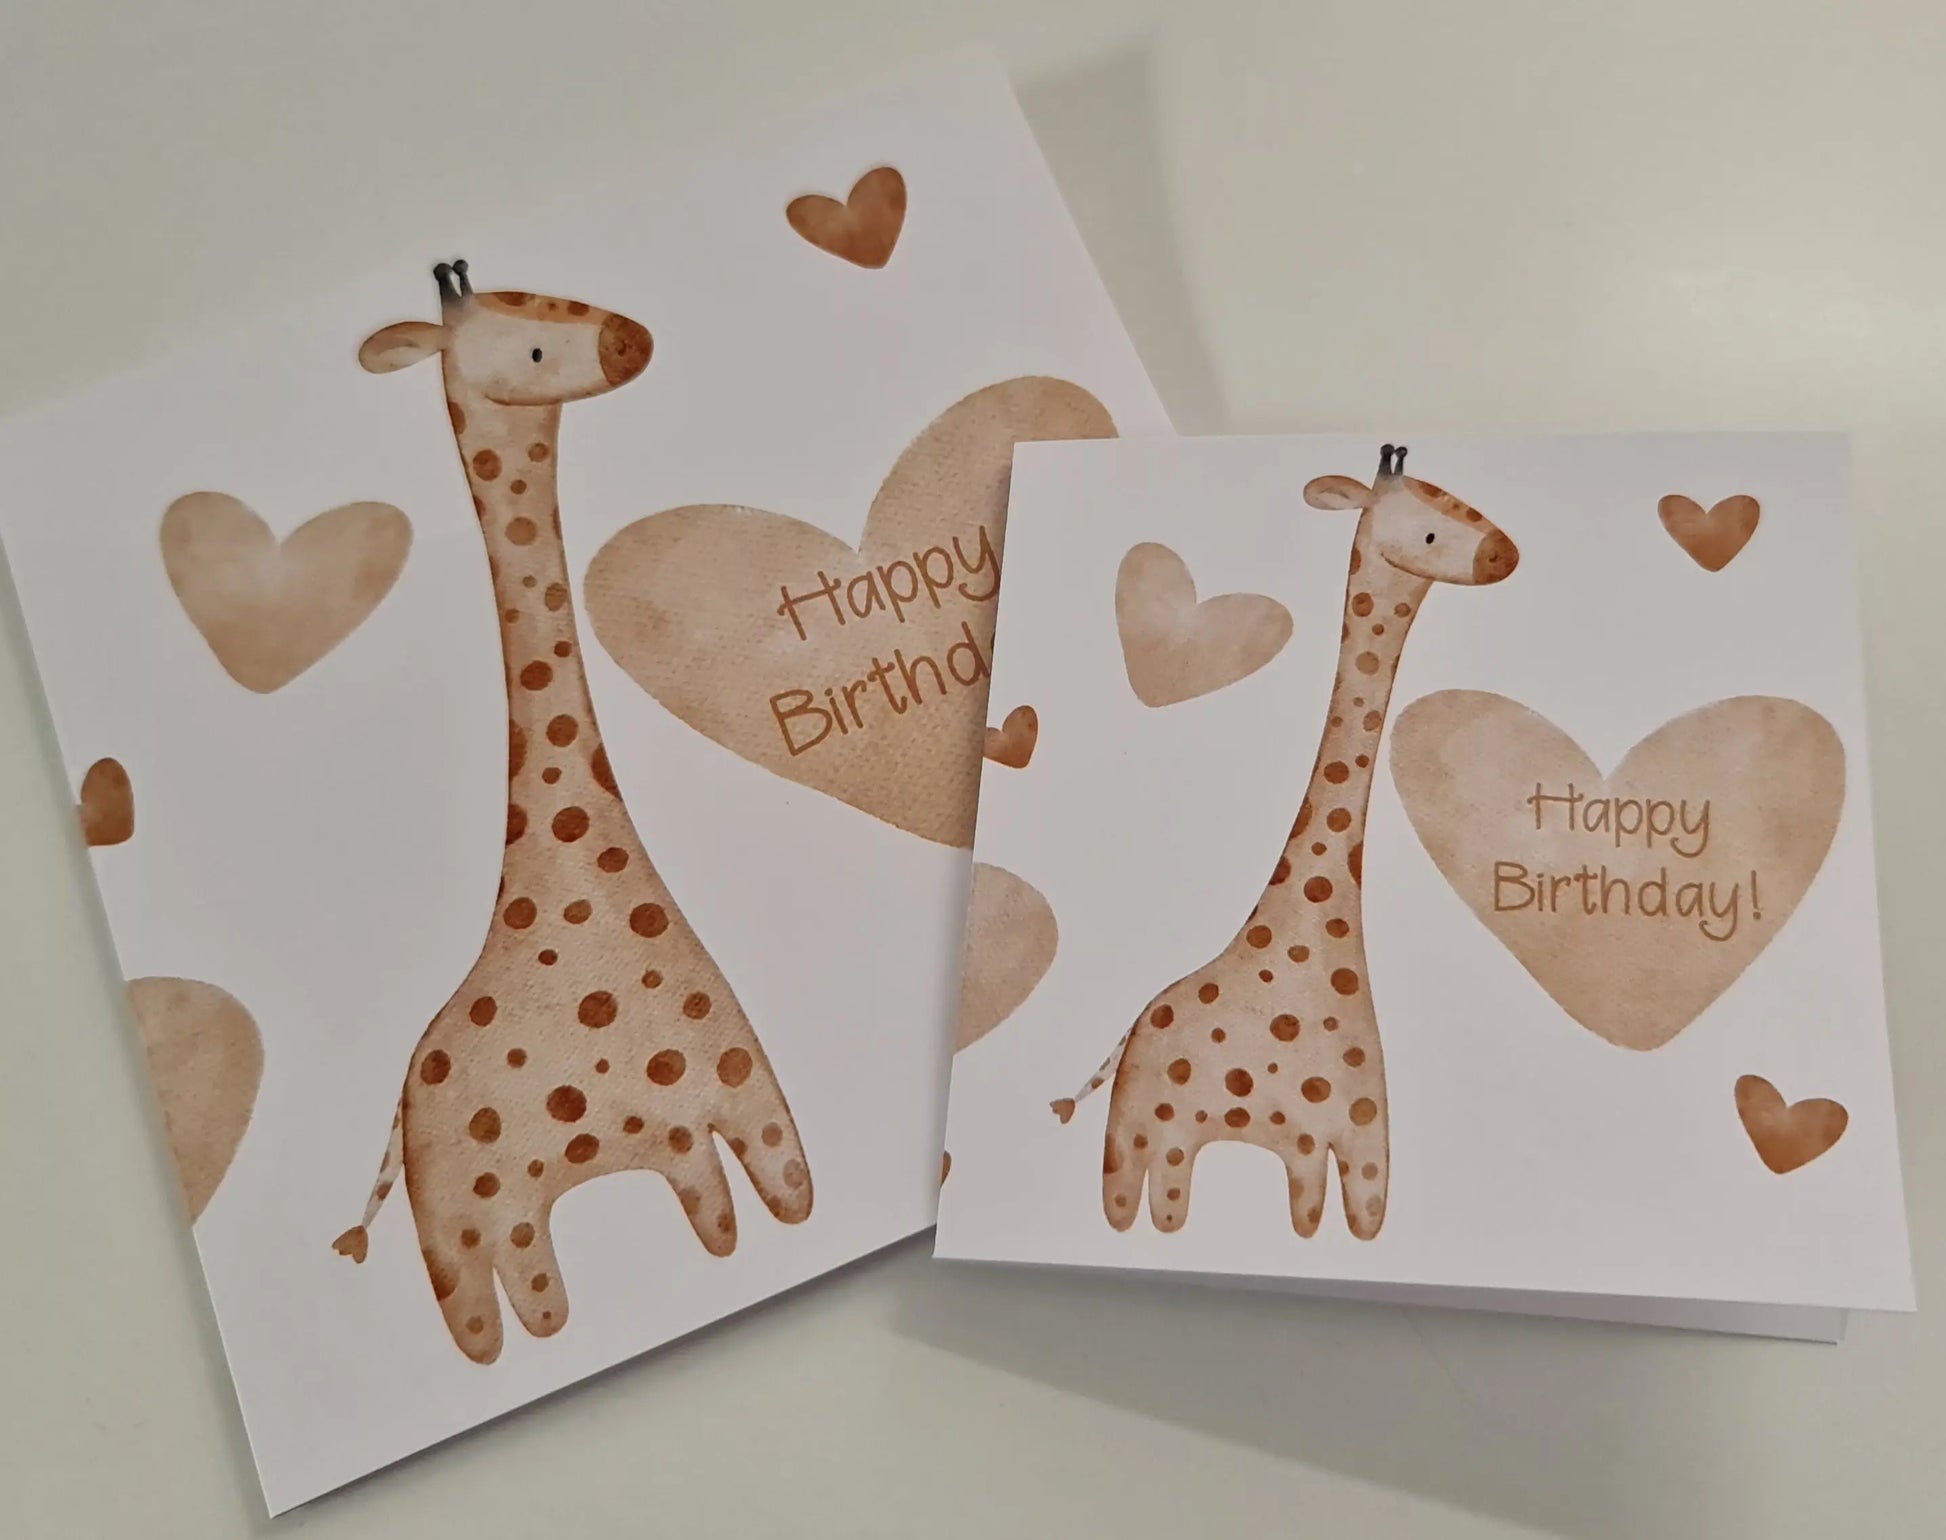 Boho Giraffe with Hearts - Happy Birthday Paper Love Cards